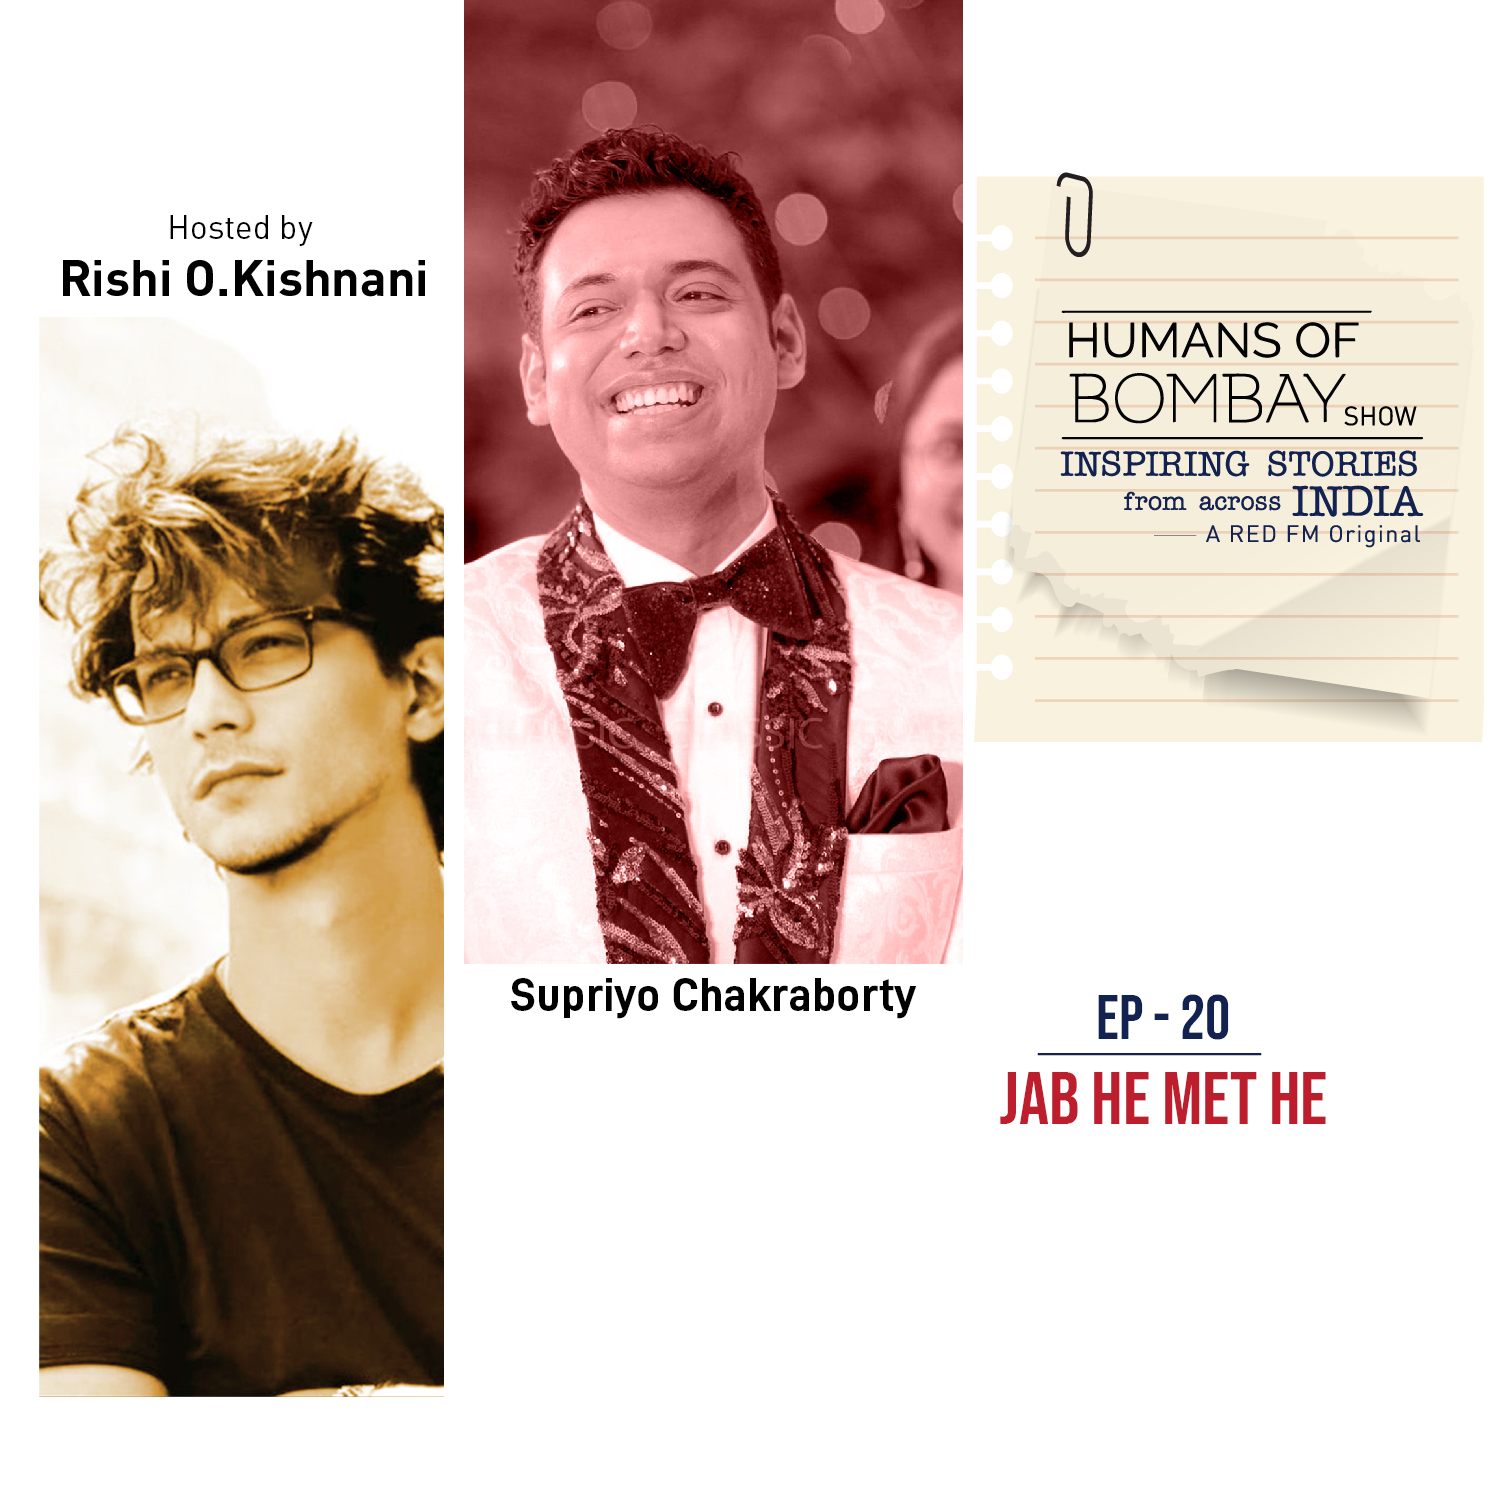 EP-20 Jab He Met He- Supriyo Chakraborty